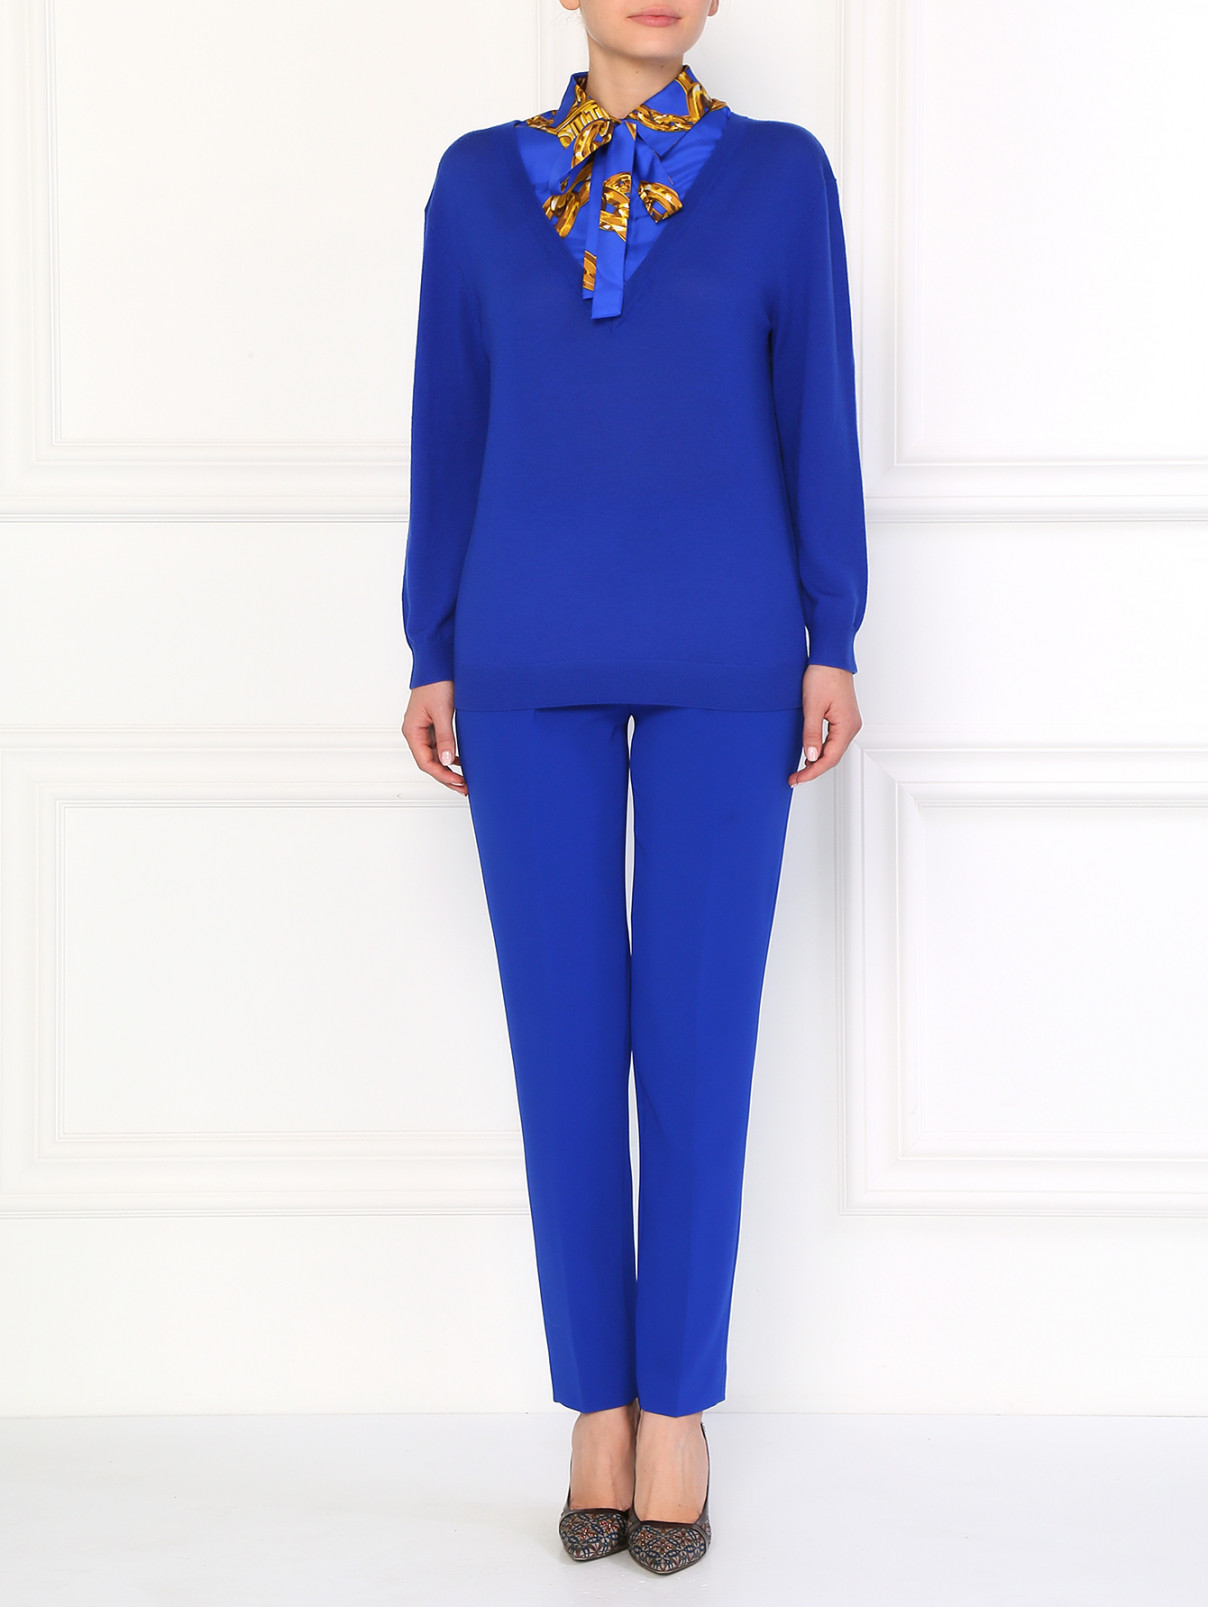 Шерстяной джемпер с вшитой шелковой рубашкой Moschino Boutique  –  Модель Общий вид  – Цвет:  Синий